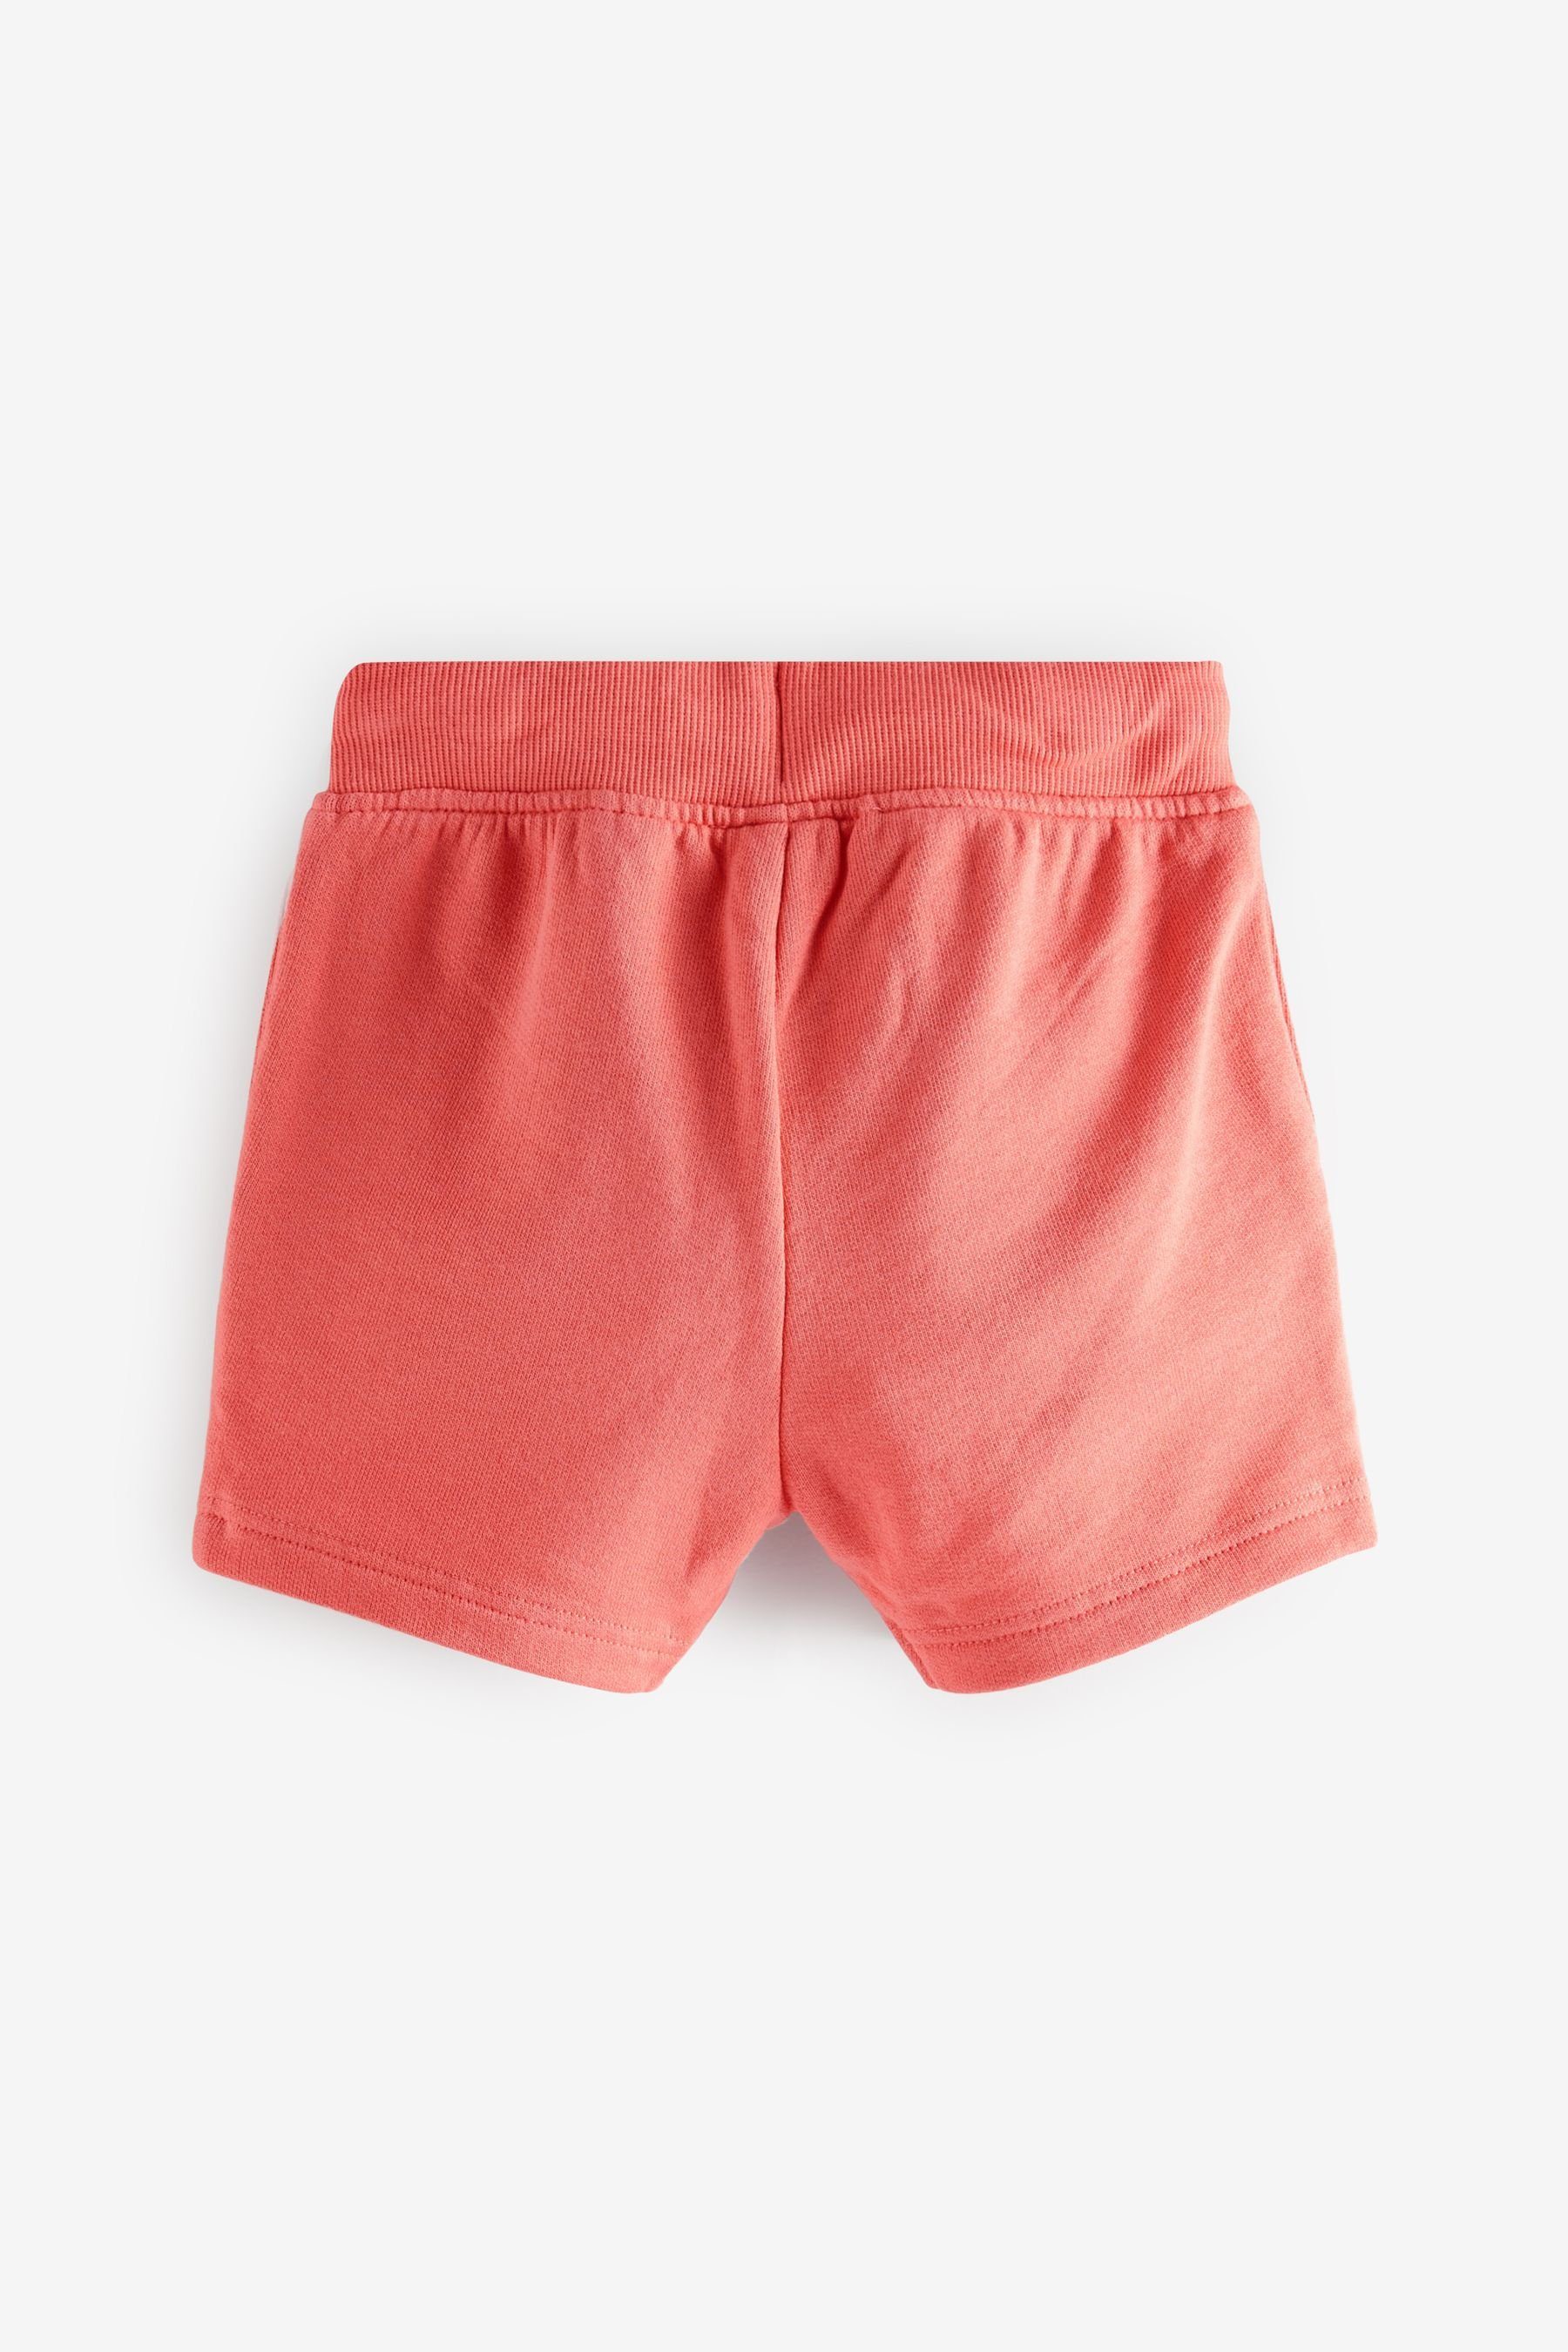 Next T-Shirt Coral & Einfarbiges (2-tlg) T-Shirt Shorts Red Shorts und Set aus